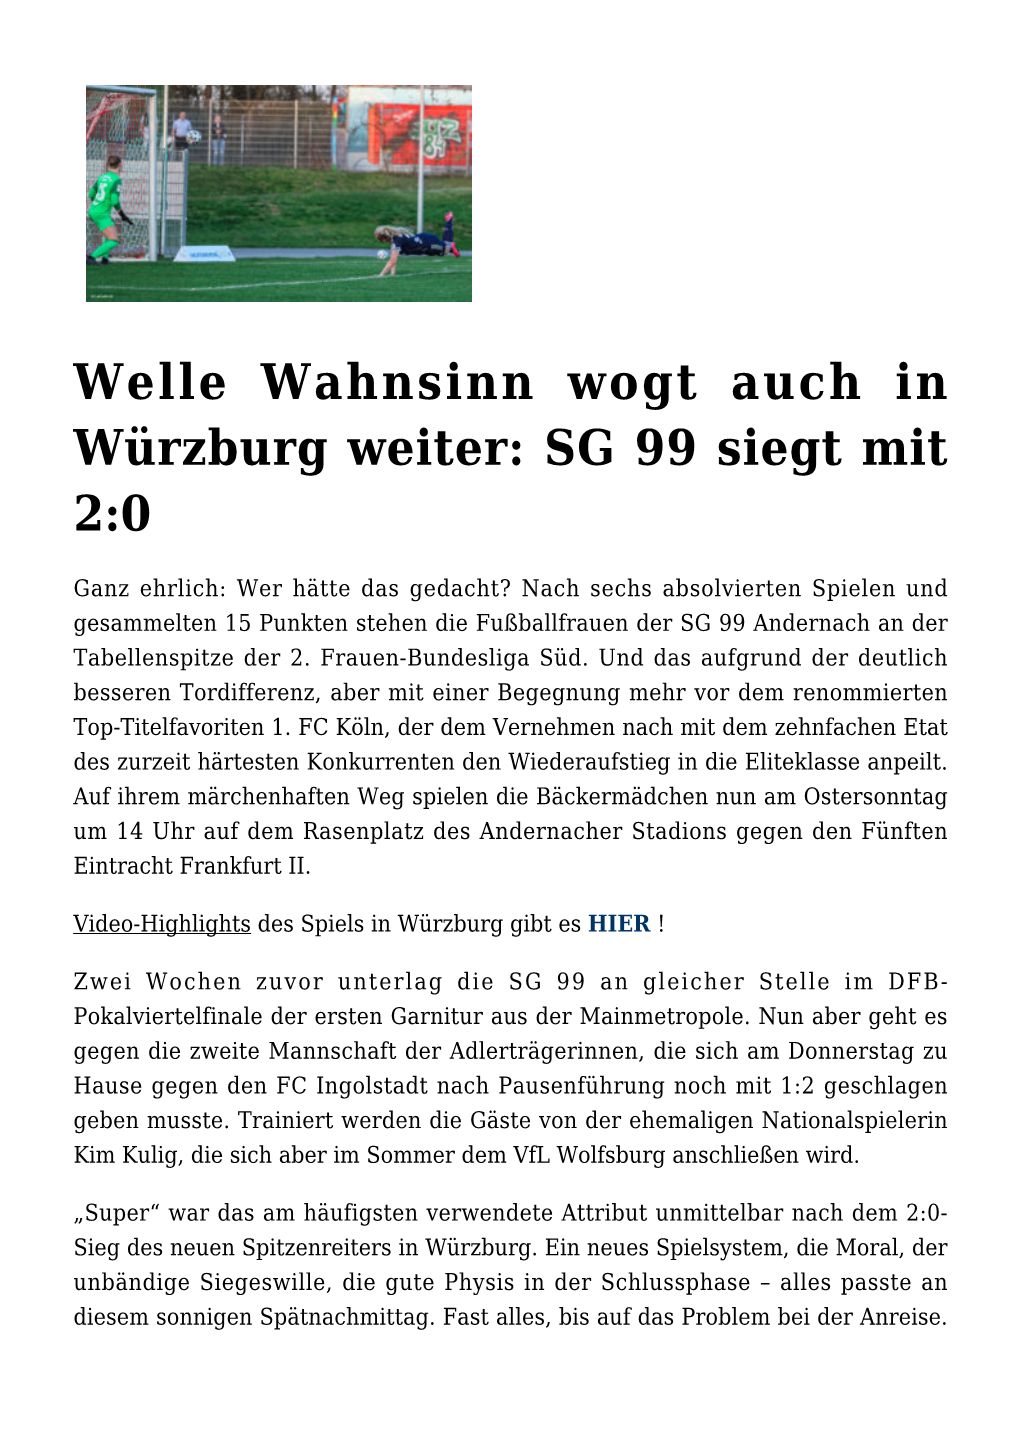 Welle Wahnsinn Wogt Auch in Würzburg Weiter: SG 99 Siegt Mit 2:0